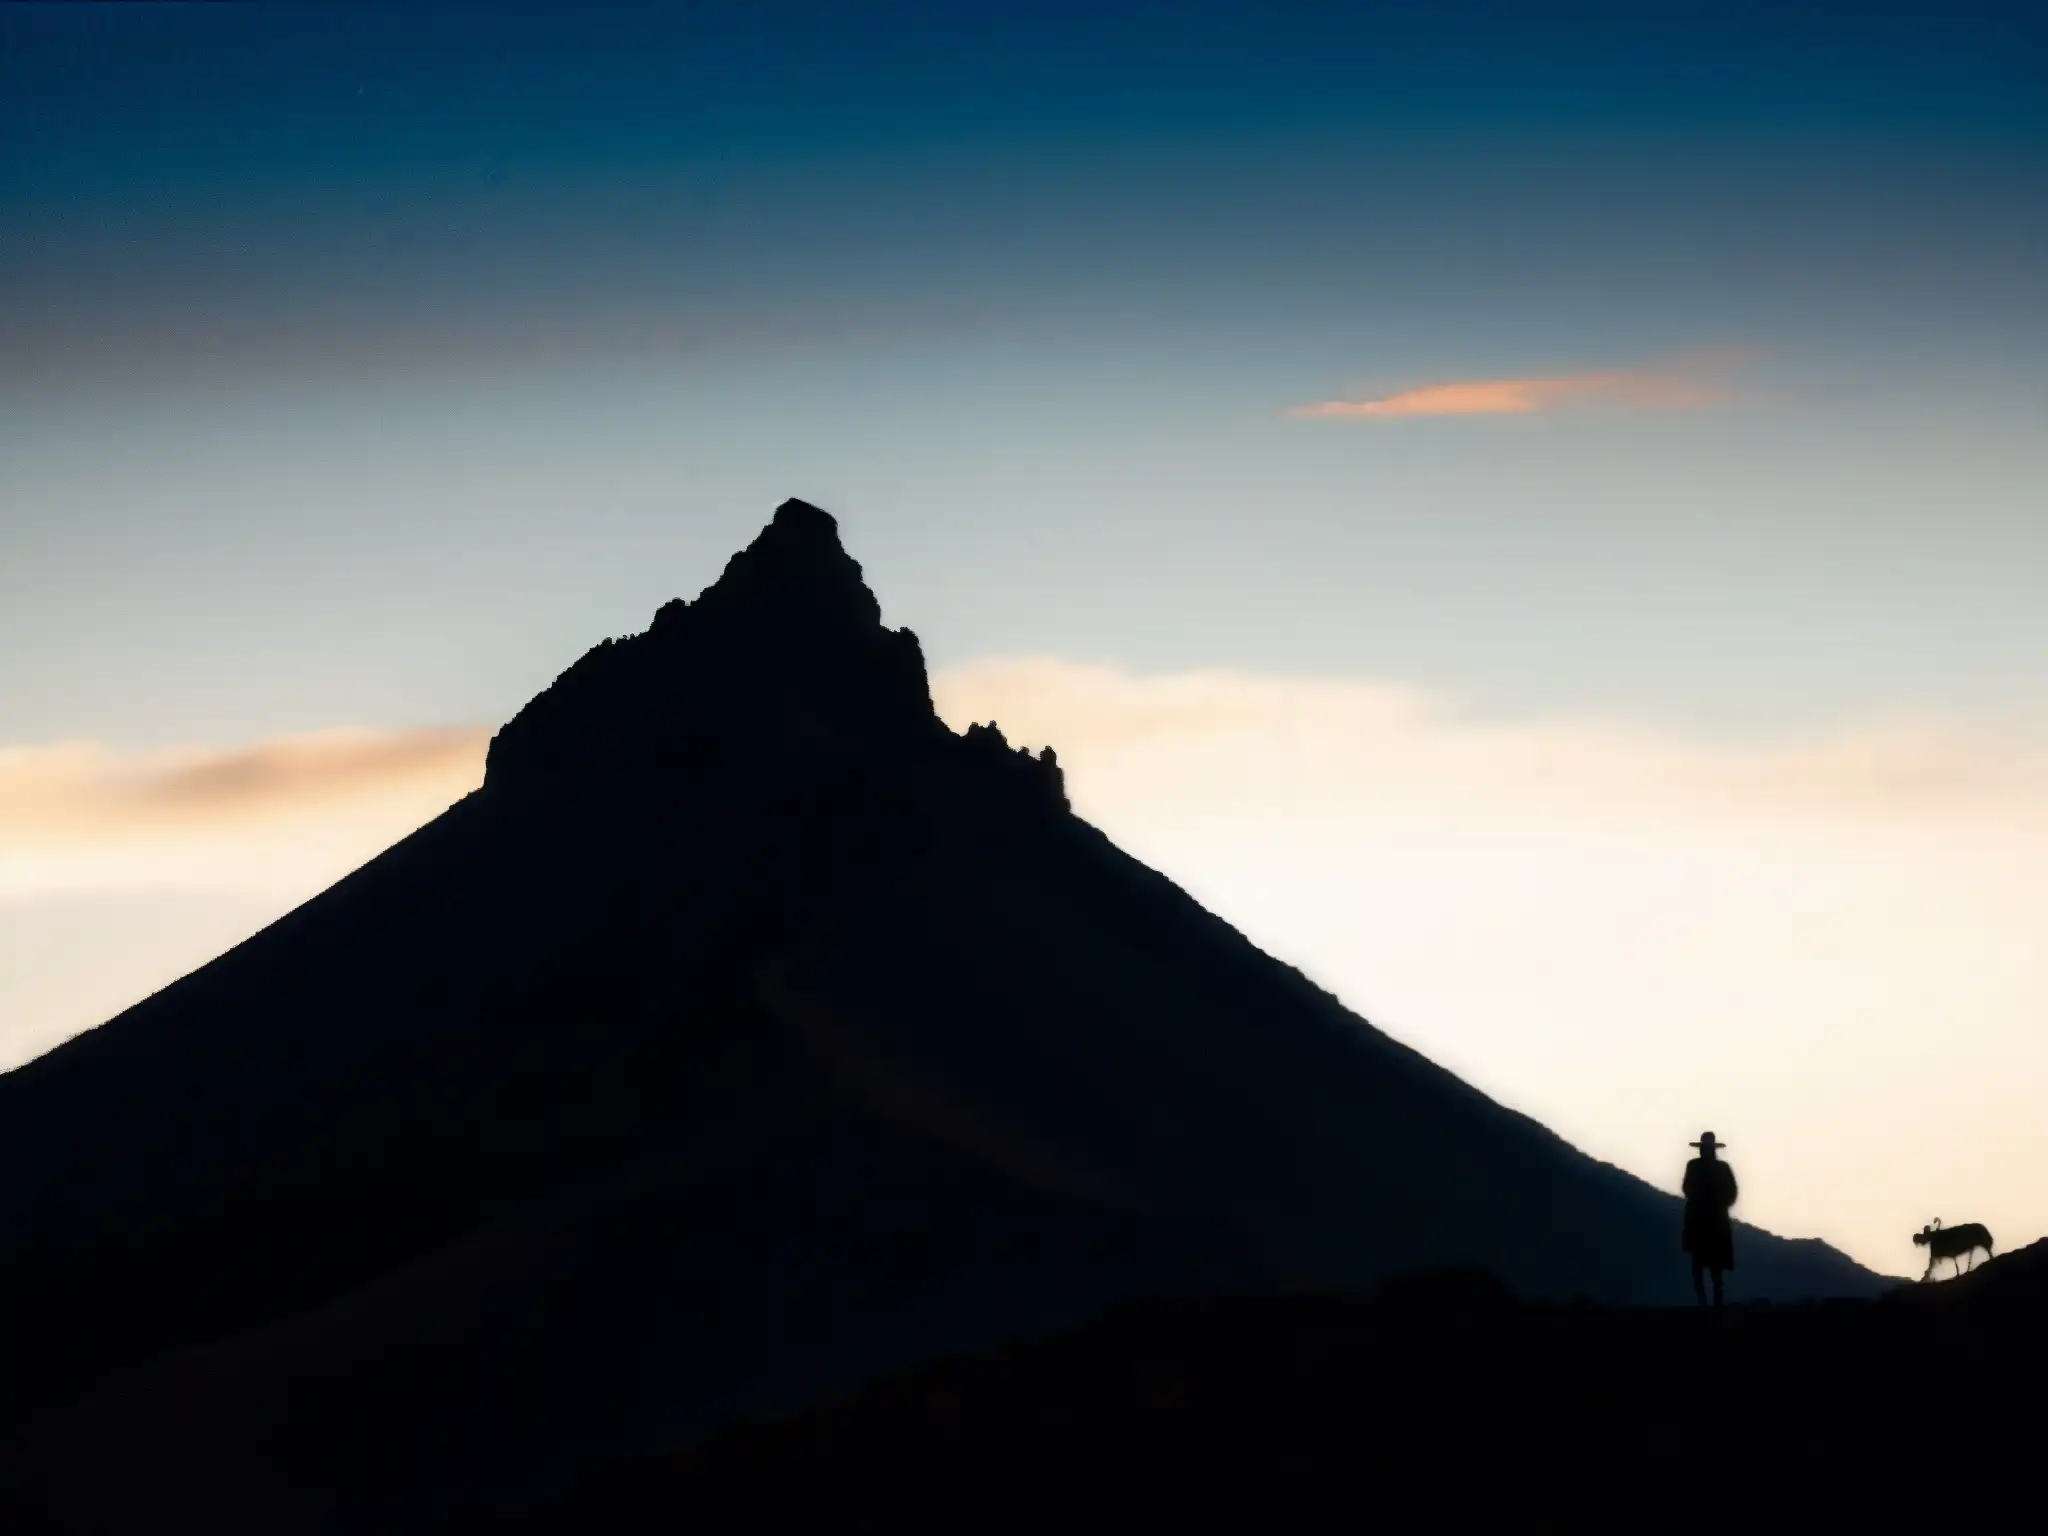 La Bruja del Cerro de San Juan Tepic, una figura misteriosa entre las sombras en el atardecer sobre el terreno escarpado